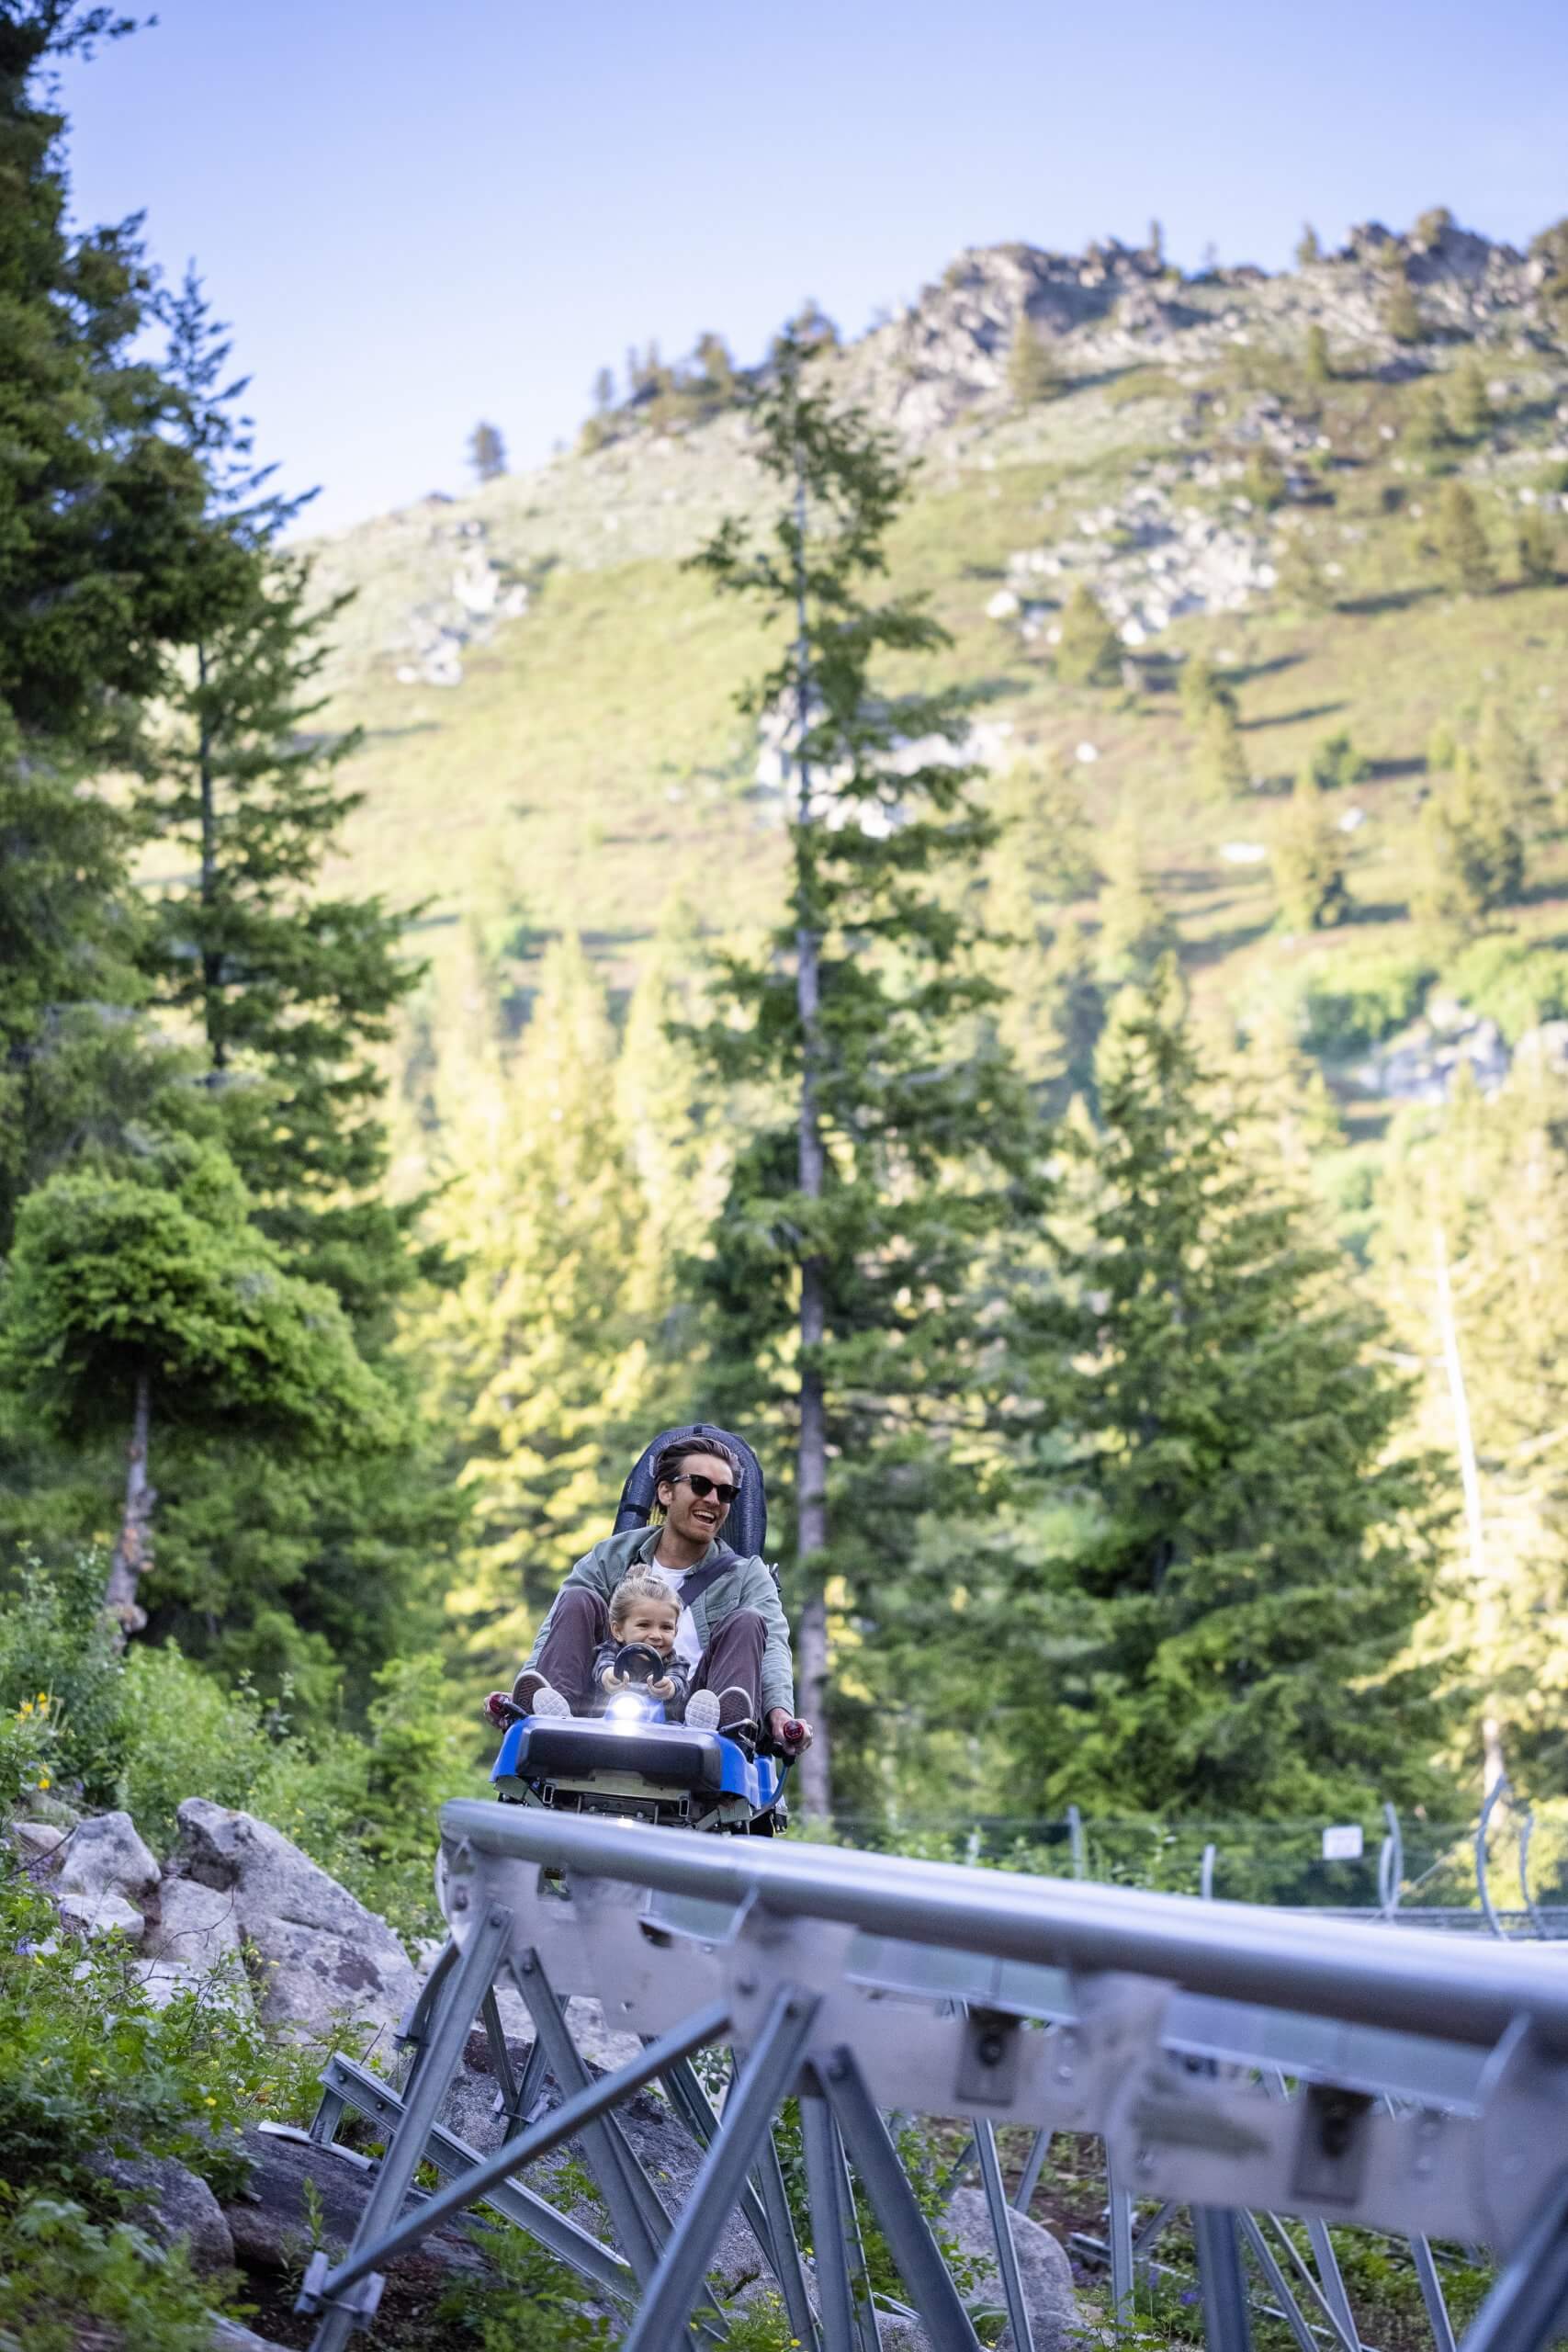 A family riding a mountain coaster.